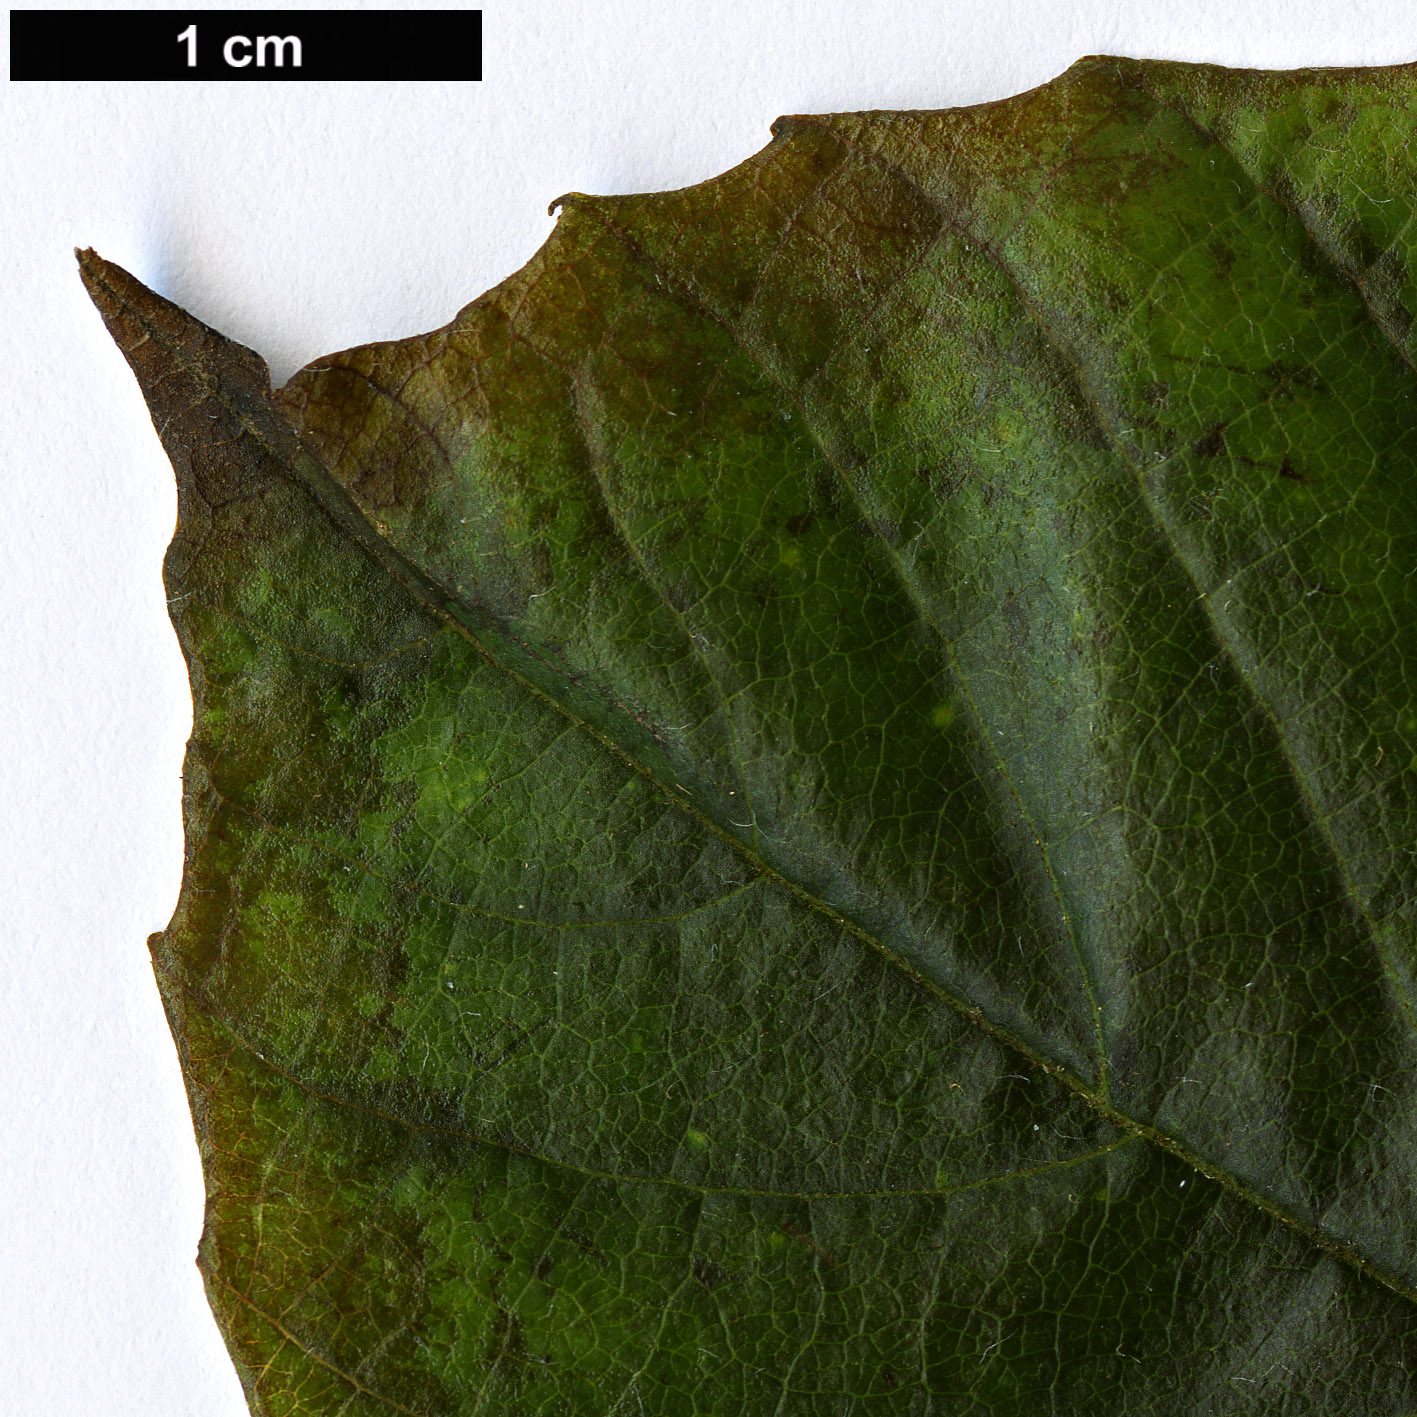 High resolution image: Family: Sabiaceae - Genus: Meliosma - Taxon: aff. myriantha